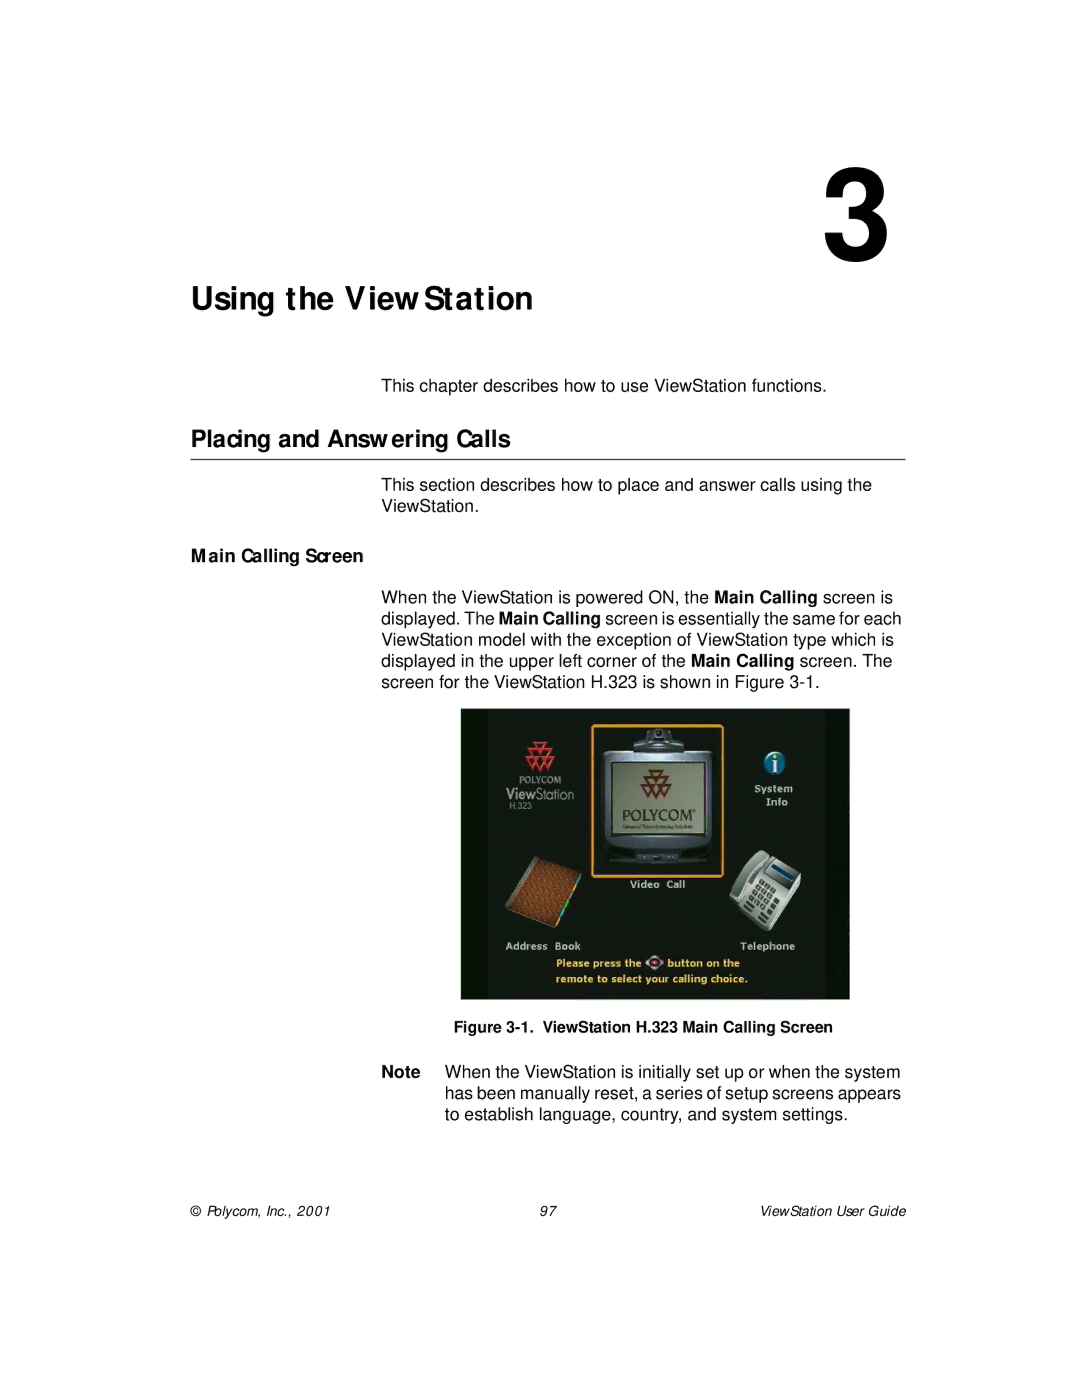 Polycom ViewStation manual Placing and Answering Calls, Main Calling Screen 